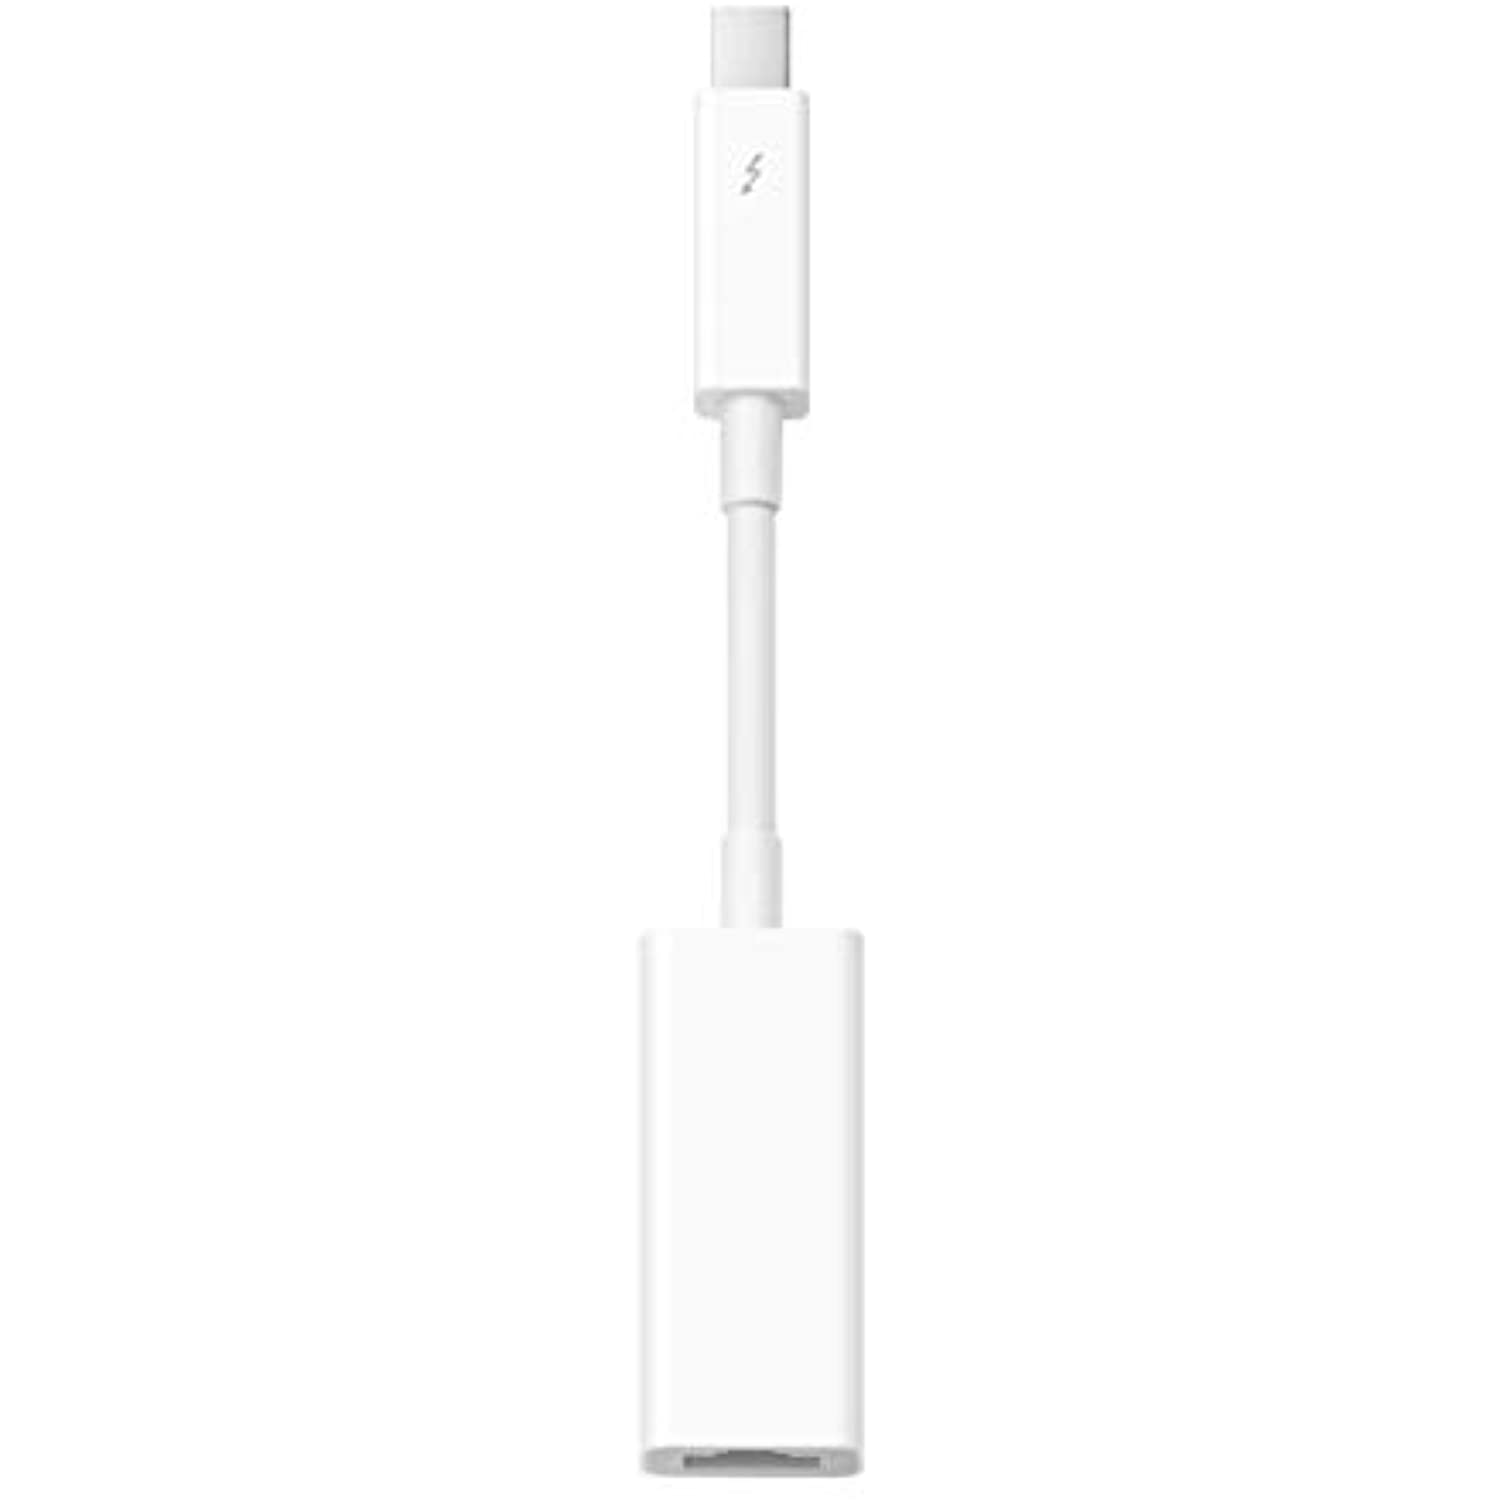 Apple - MD463ZM/A Thunderbolt-to-Gigabit Ethernet Adapter - White